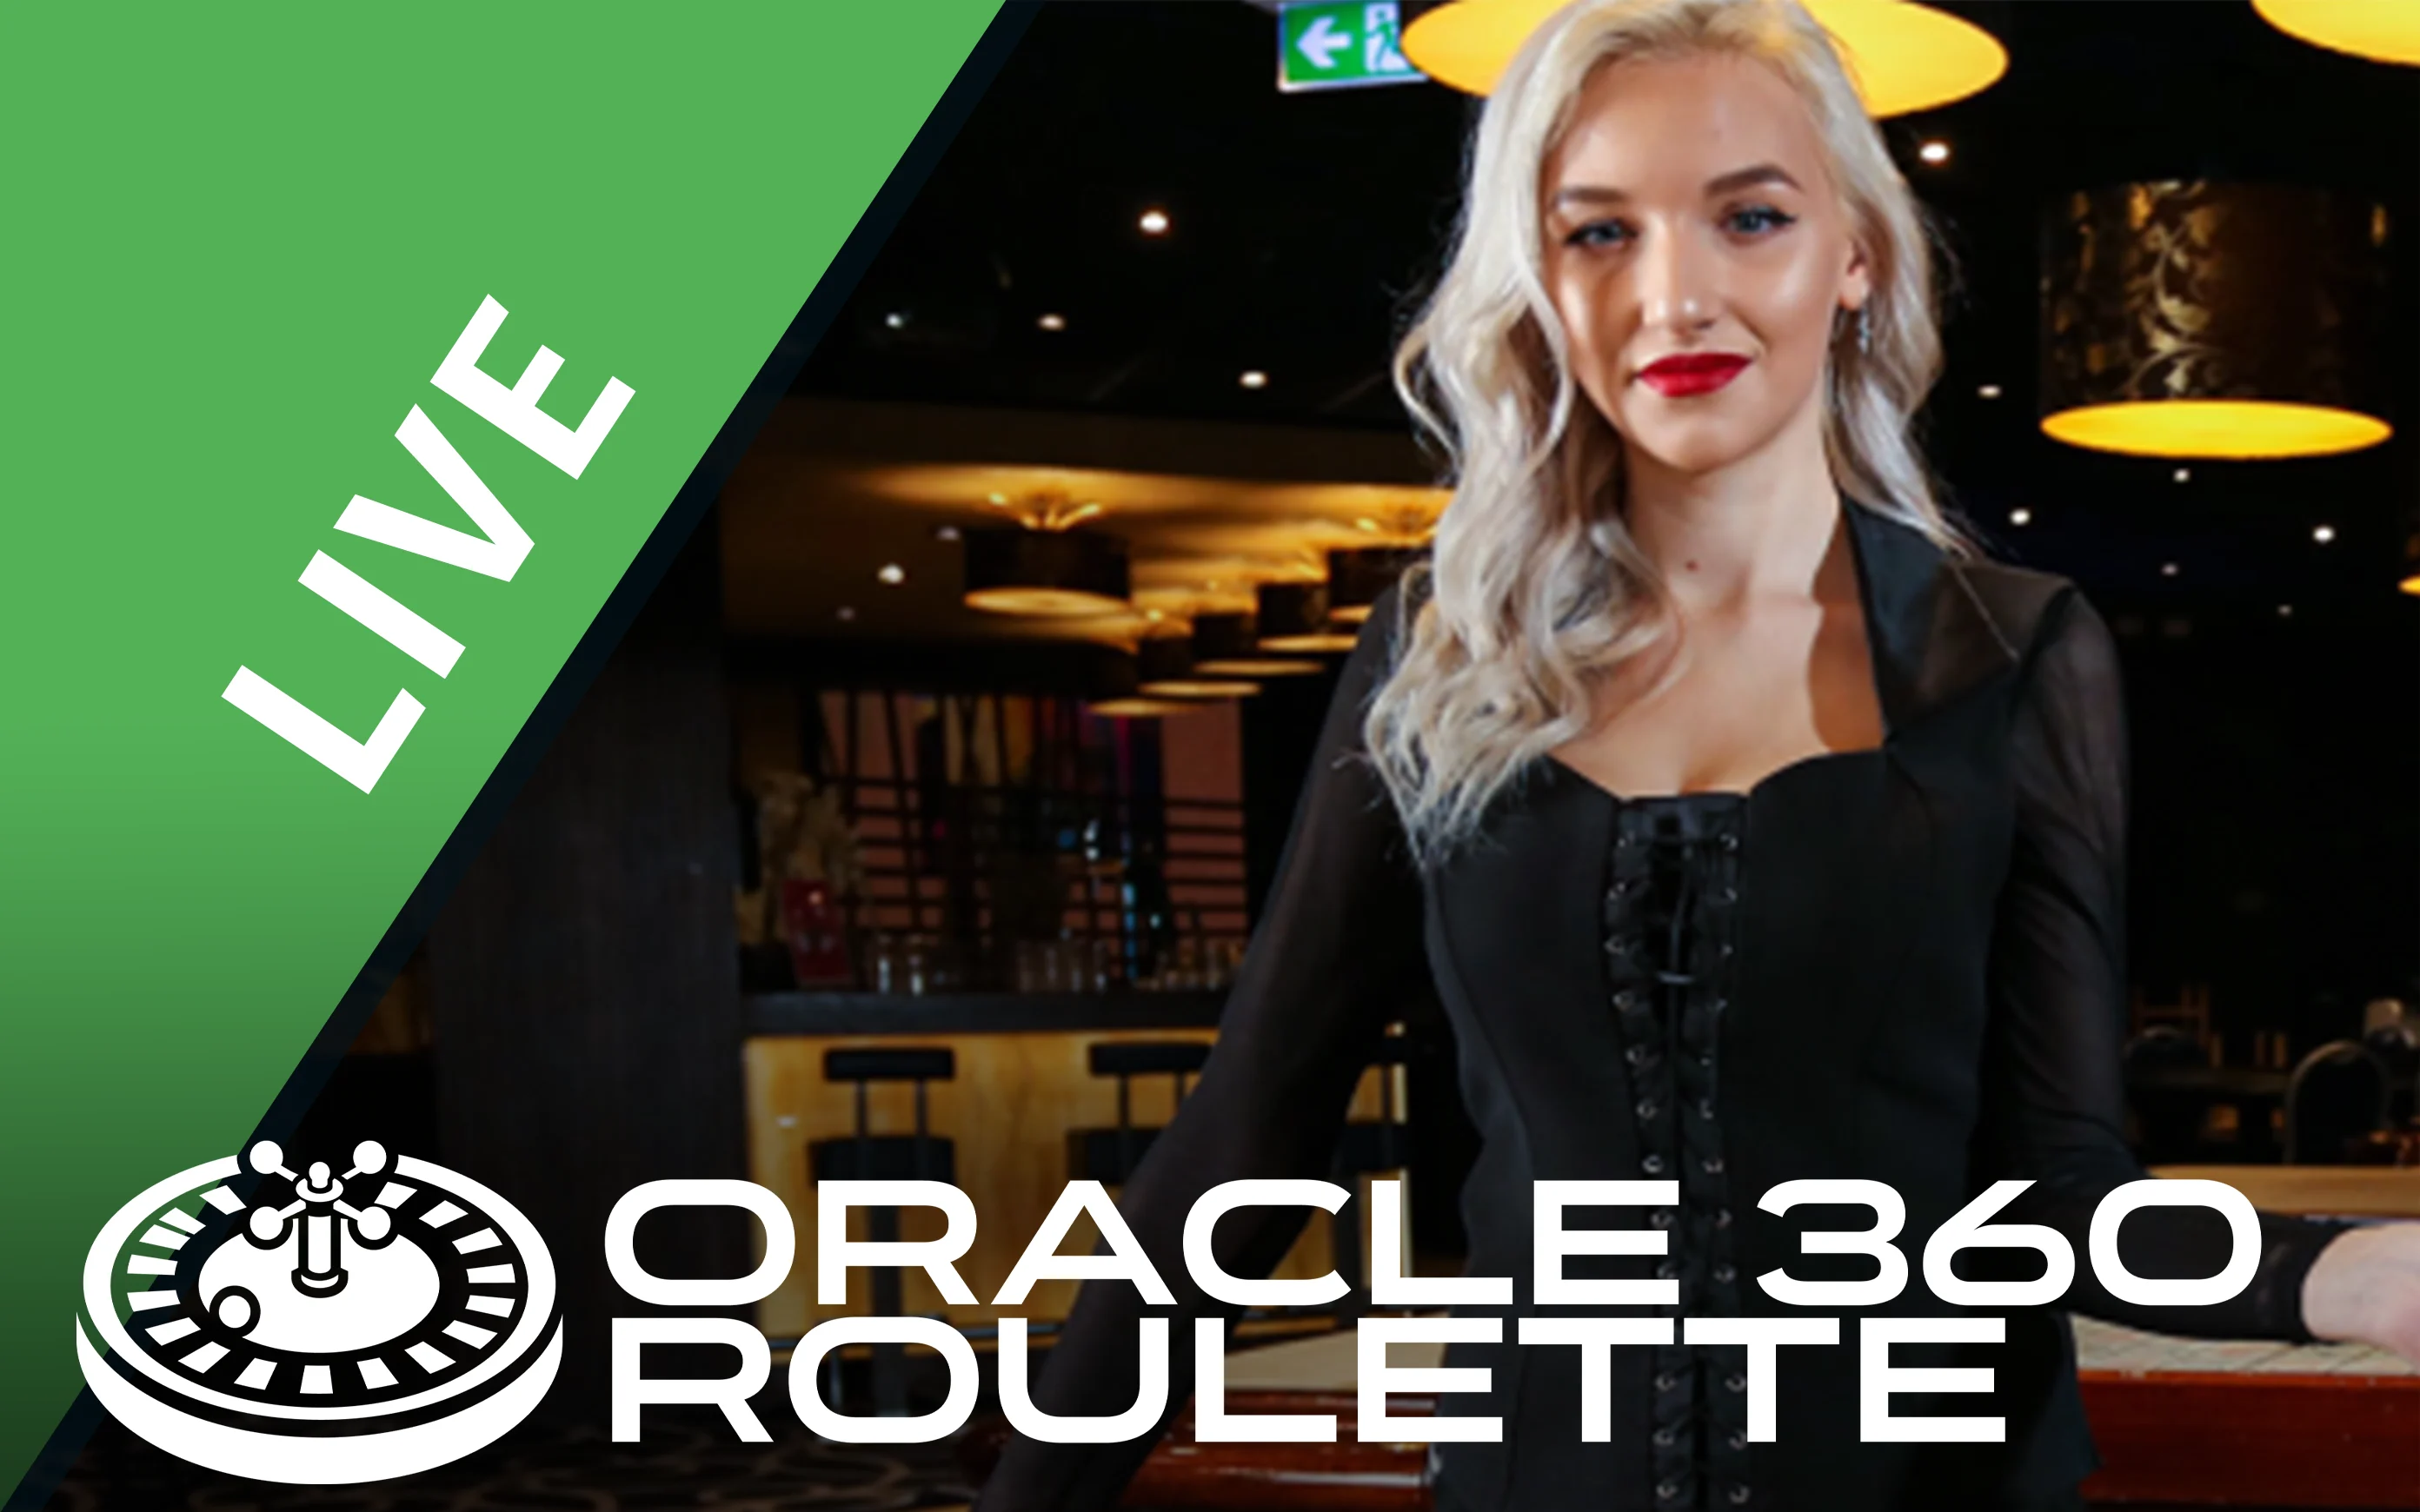 Juega a Oracle 360 Roulette en el casino en línea de Starcasino.be